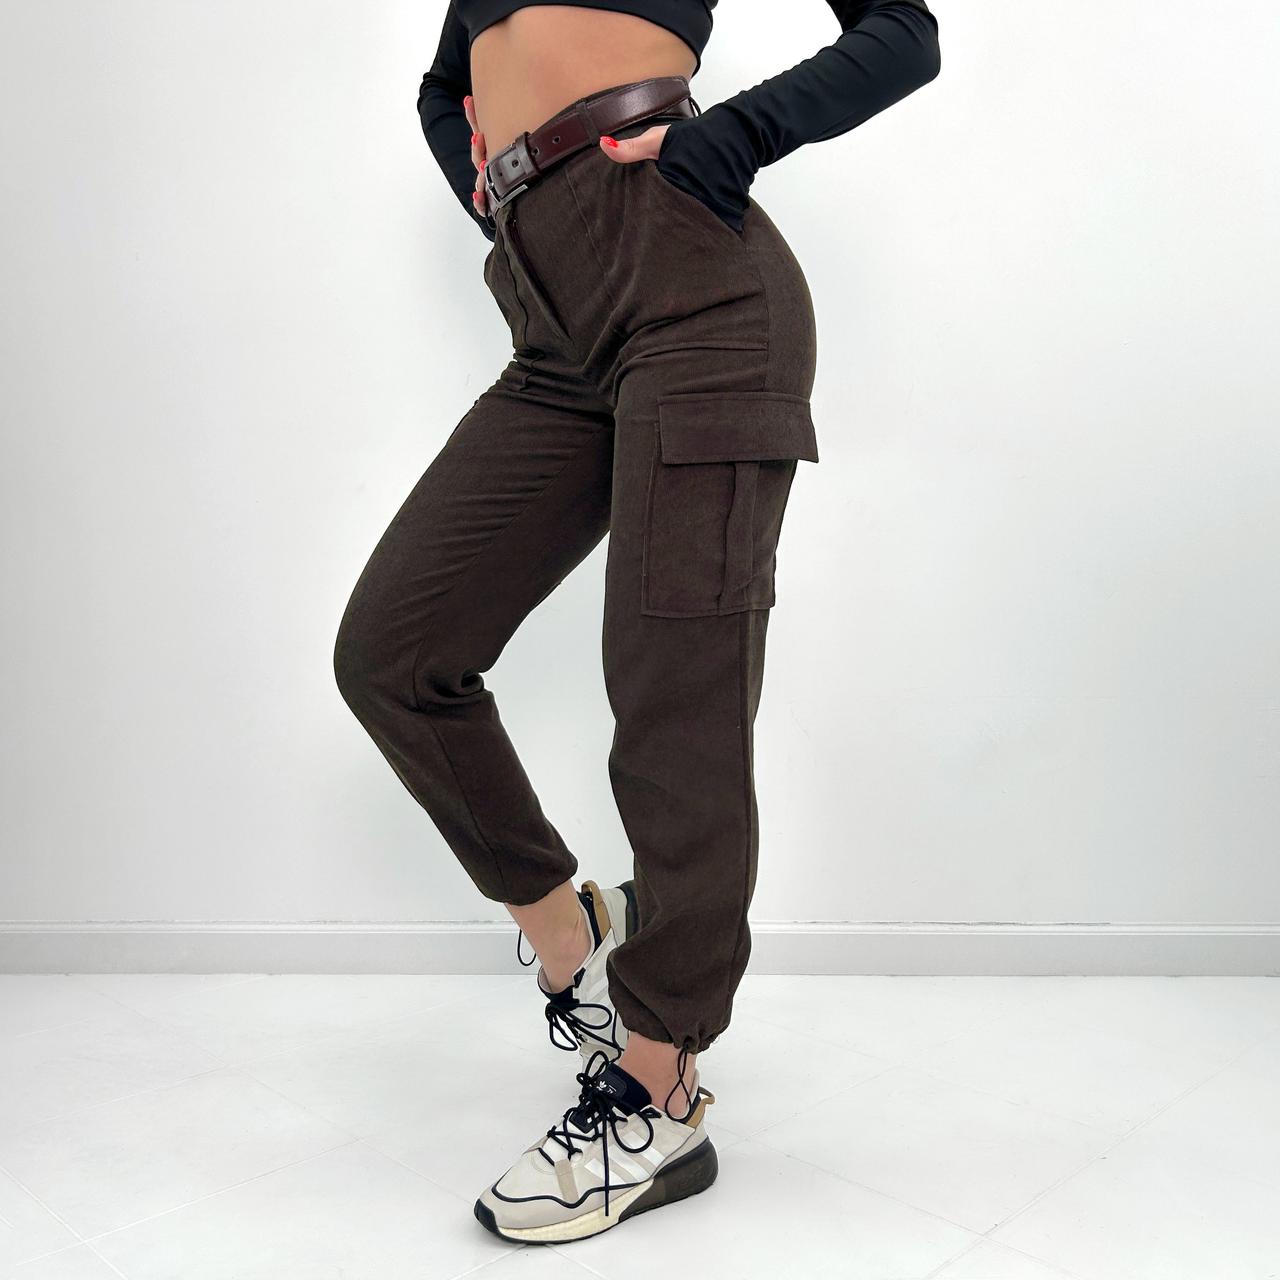 Жіночі вельветові брюки карго "Urban" оптом | Батал